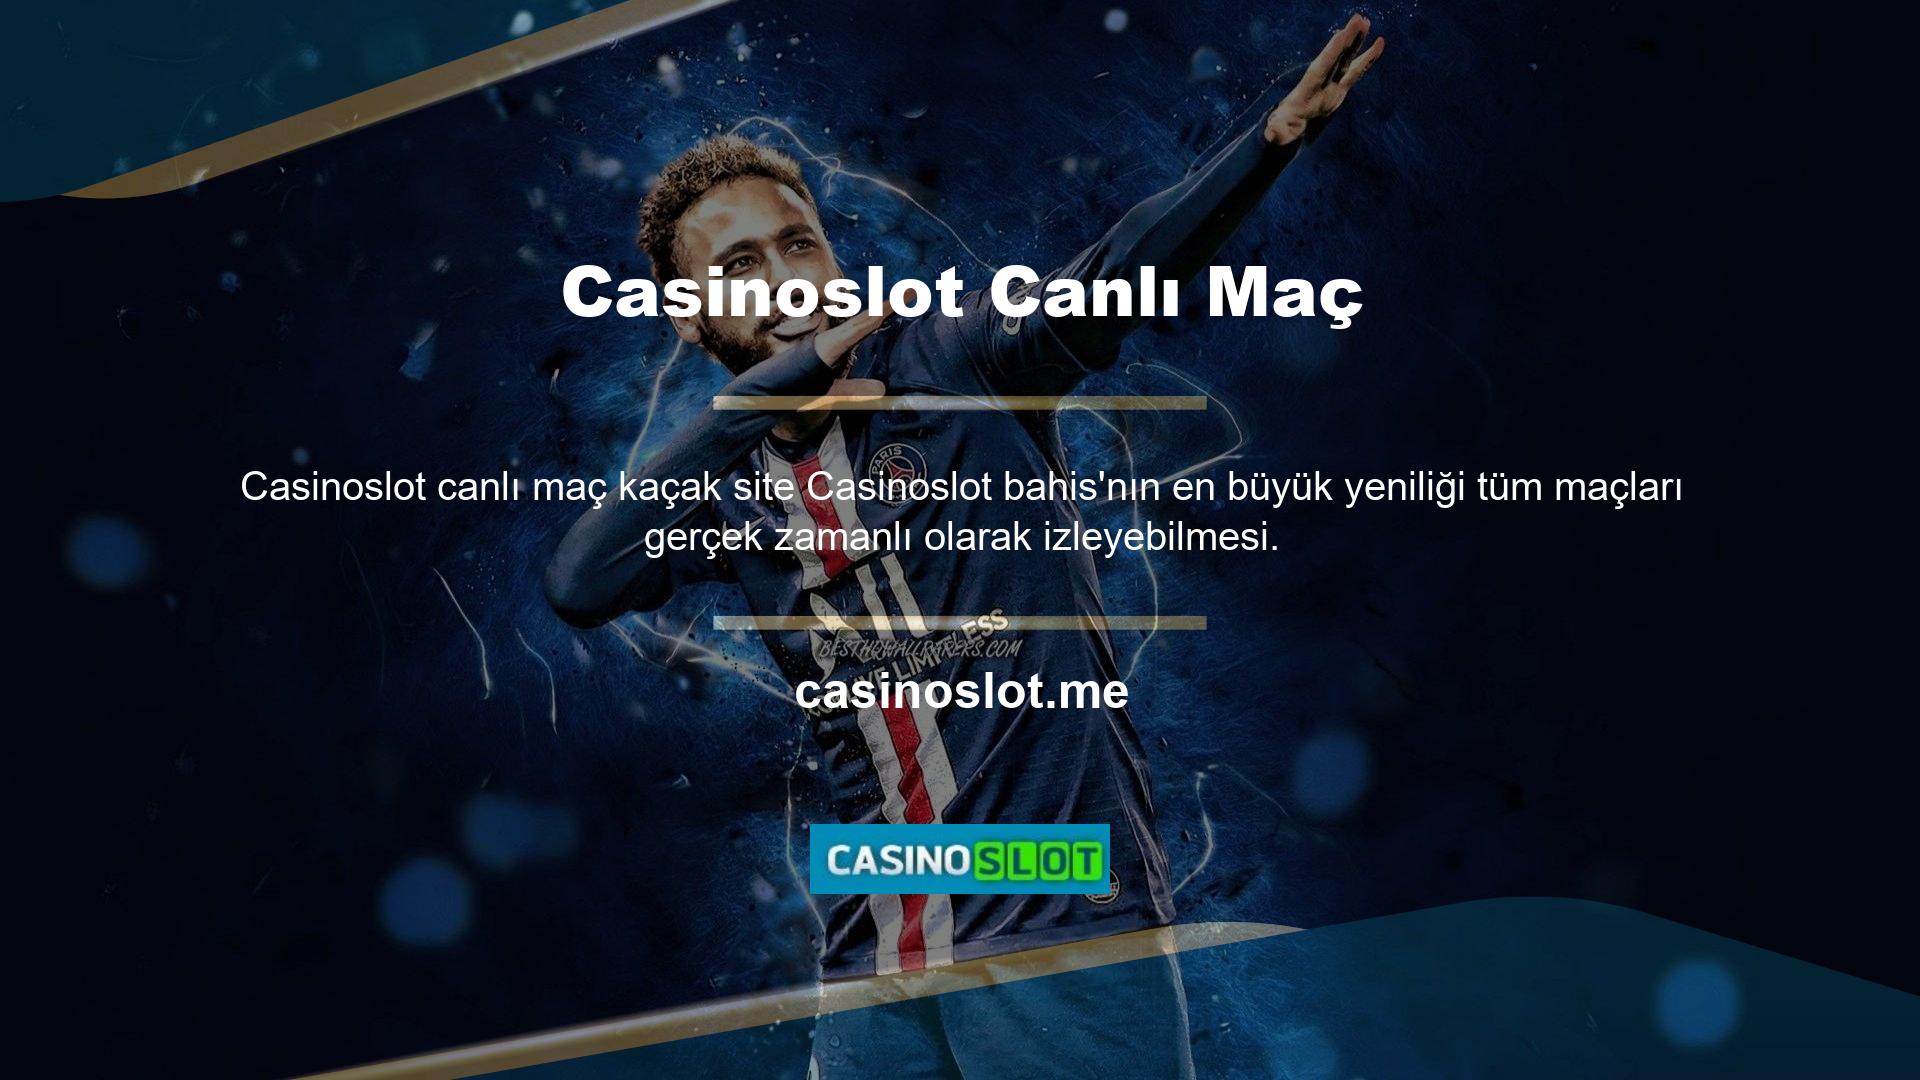 Casinoslot Tv sayesinde, bahis oynadığınız tüm oyunlara gerçek zamanlı olarak erişebilirsiniz